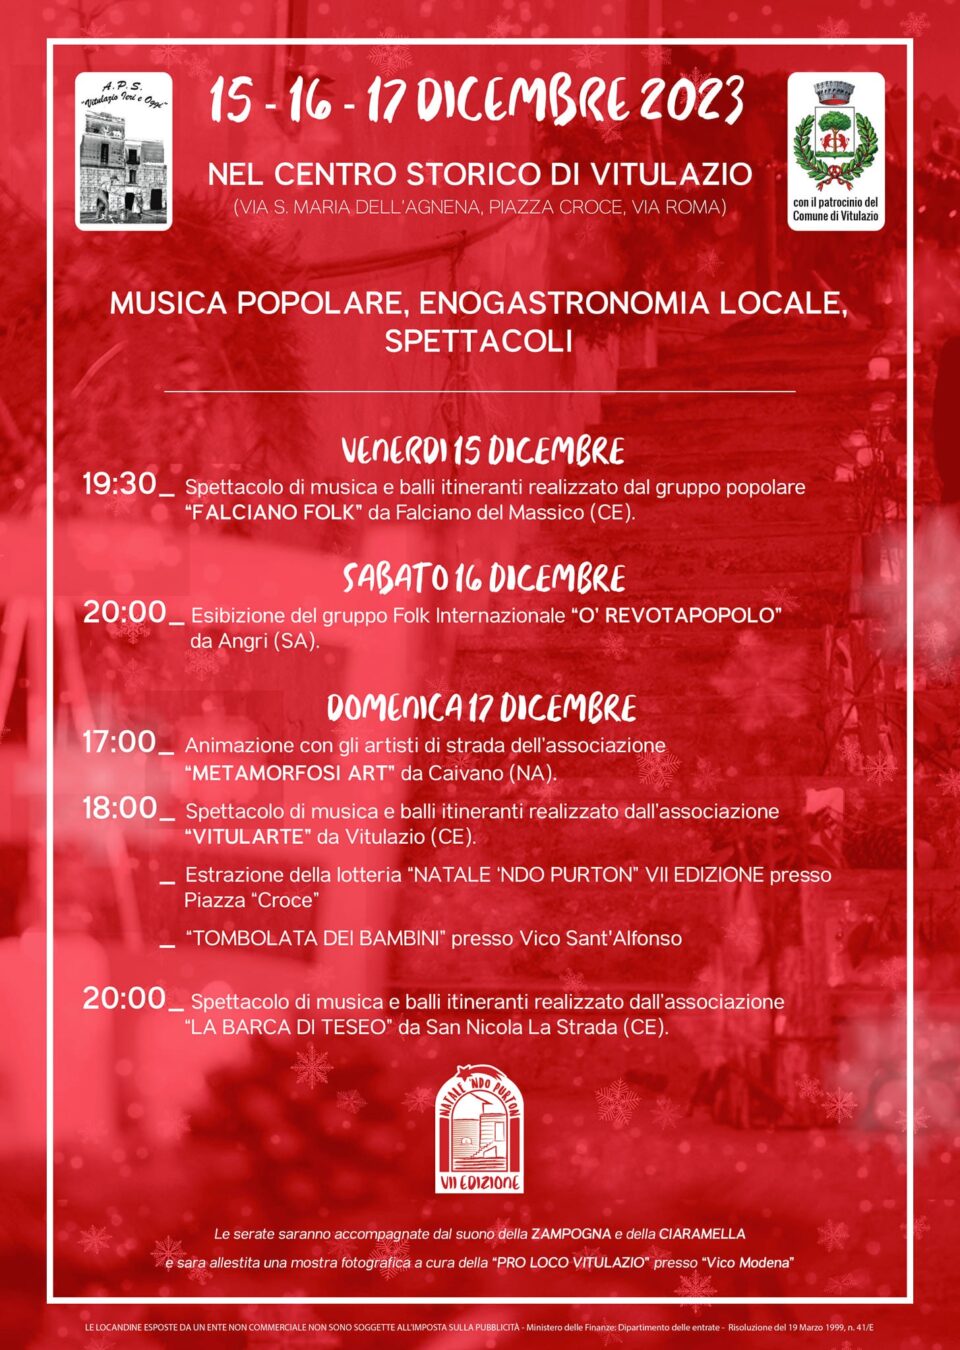 Natale 'Ndo Purton a Vitulazio (CE) 2023: il programma